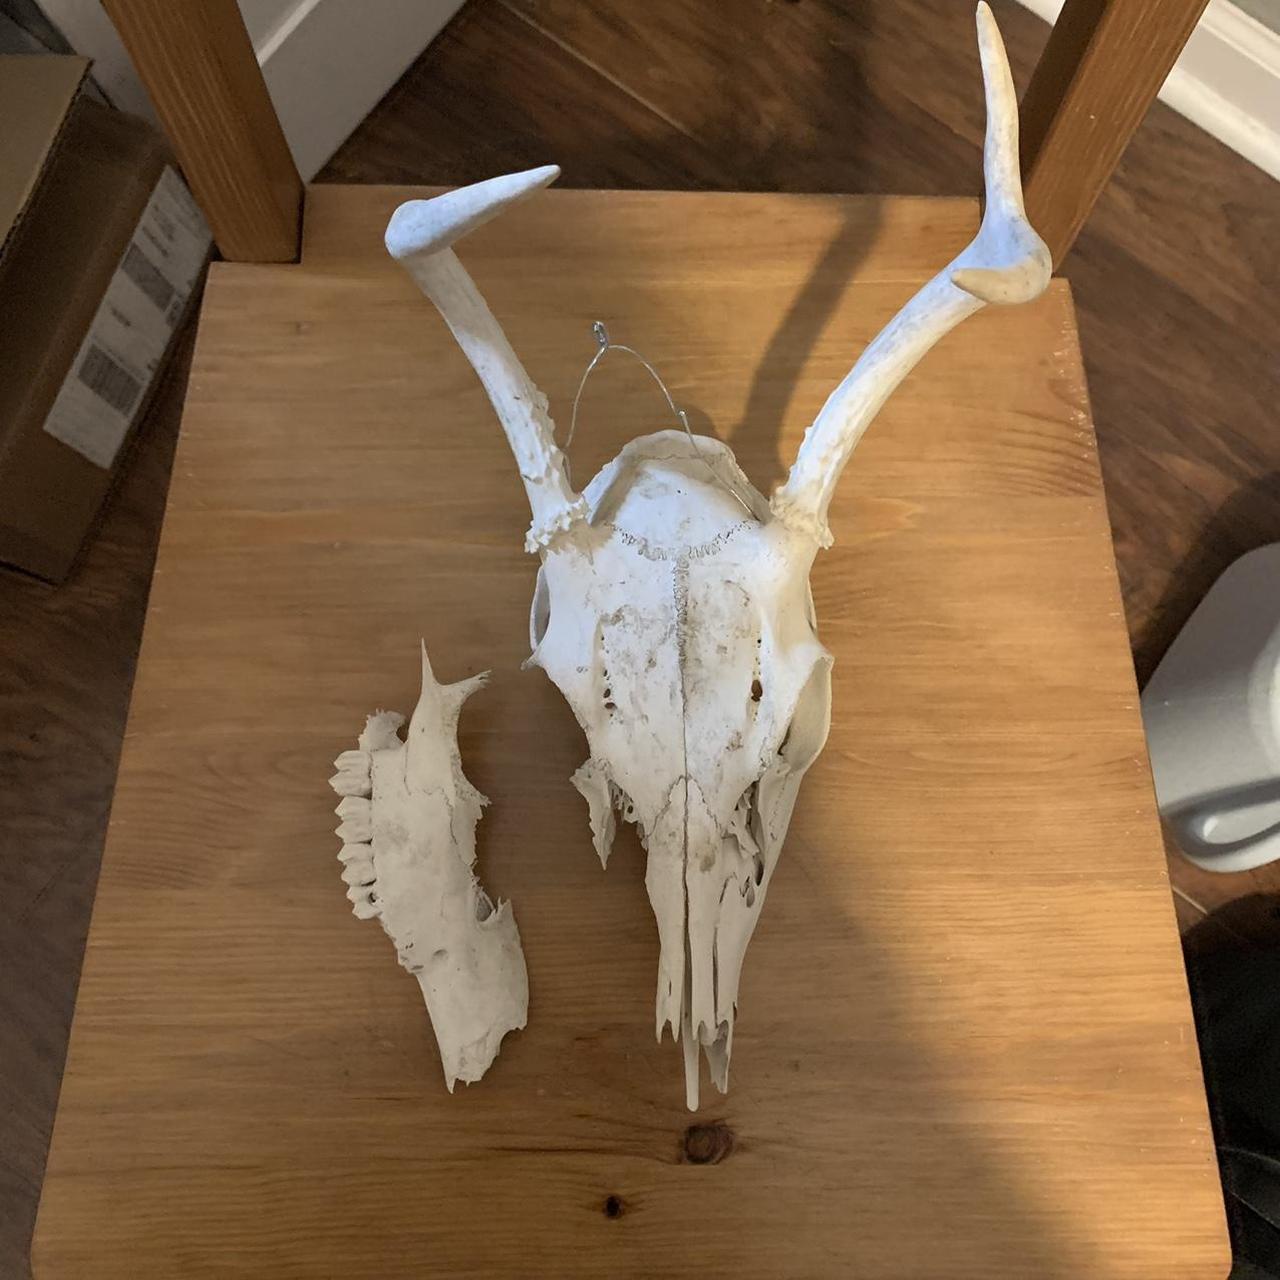 Small deer juvenile buck skull This skull is like a... - Depop